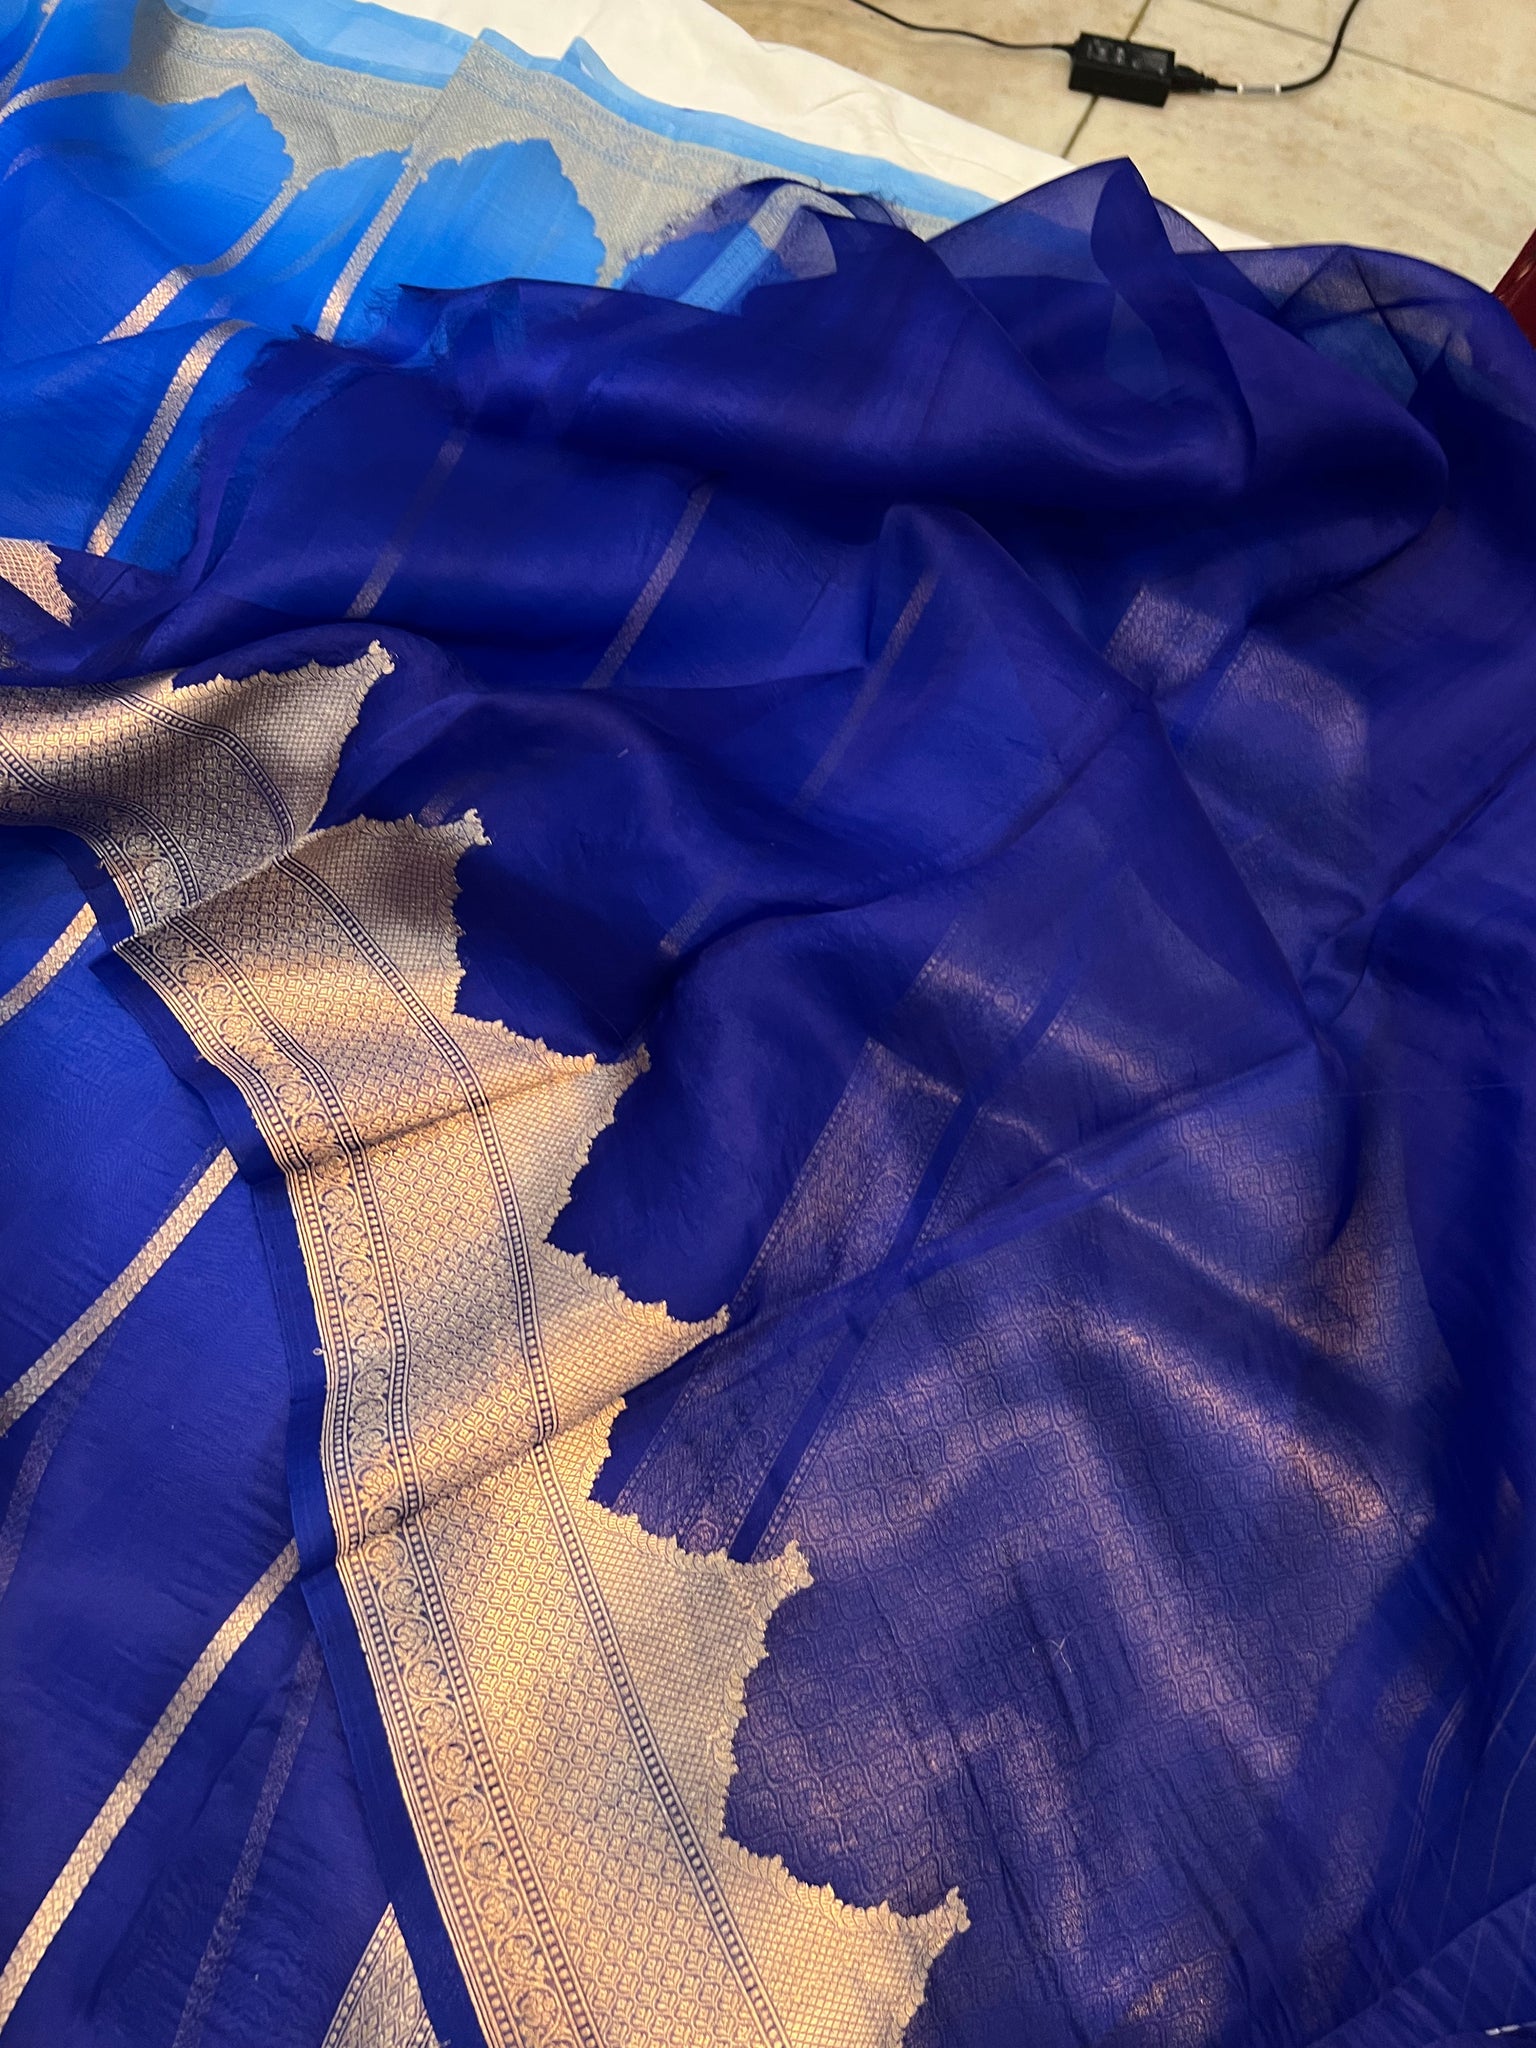 Buy Ek-Pal Checkered Daily Wear Silk Blend, Cotton Blend Light Blue Sarees  Online @ Best Price In India | Flipkart.com